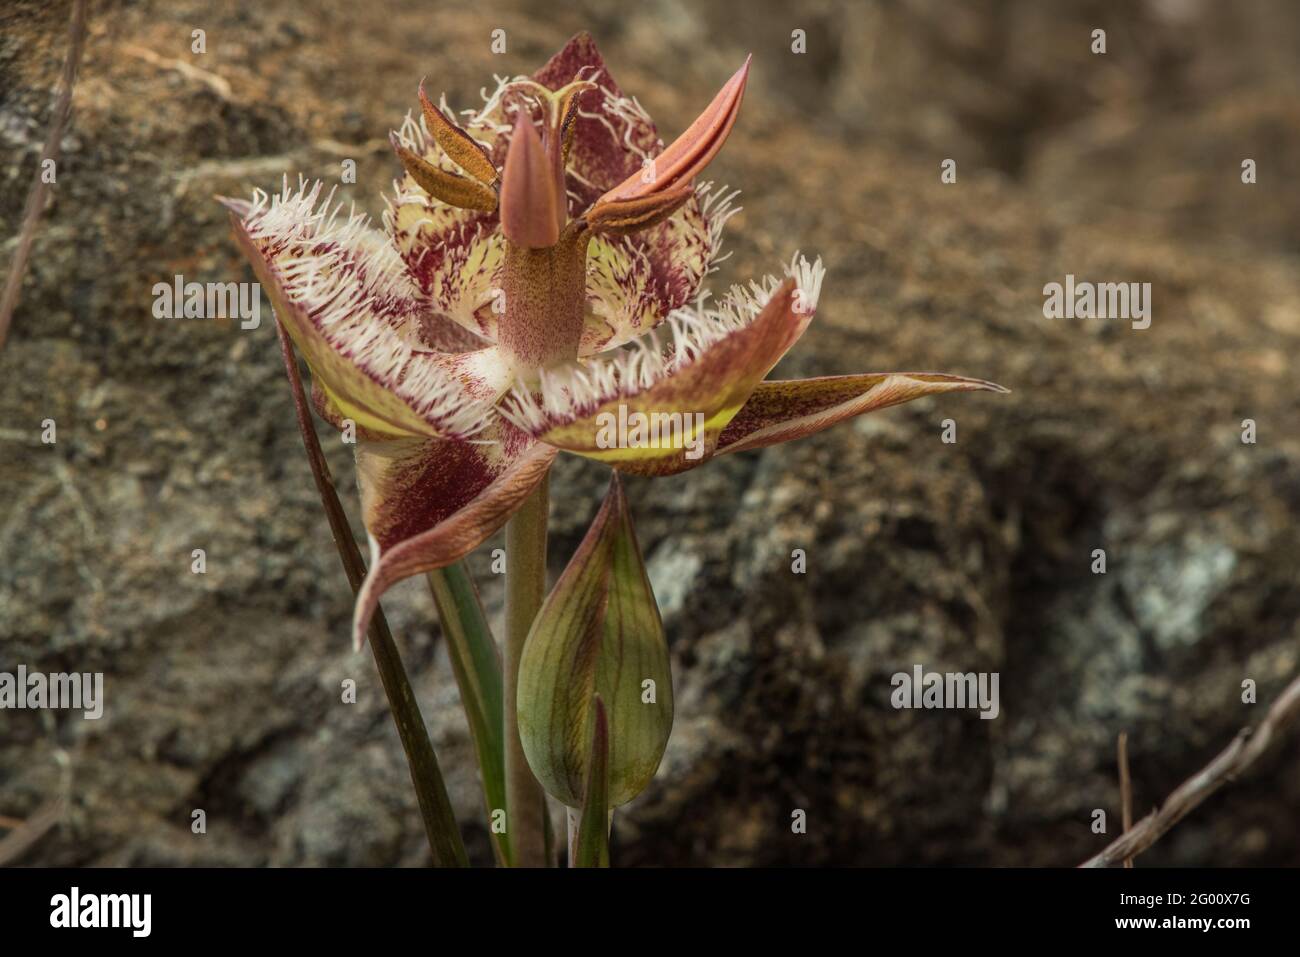 Tiburon Mariposa Lily (Calochortus tiburonensis) plante rare endémique à la réserve de Ring Mountain, dans la région de la baie de San Francisco en Californie. Banque D'Images